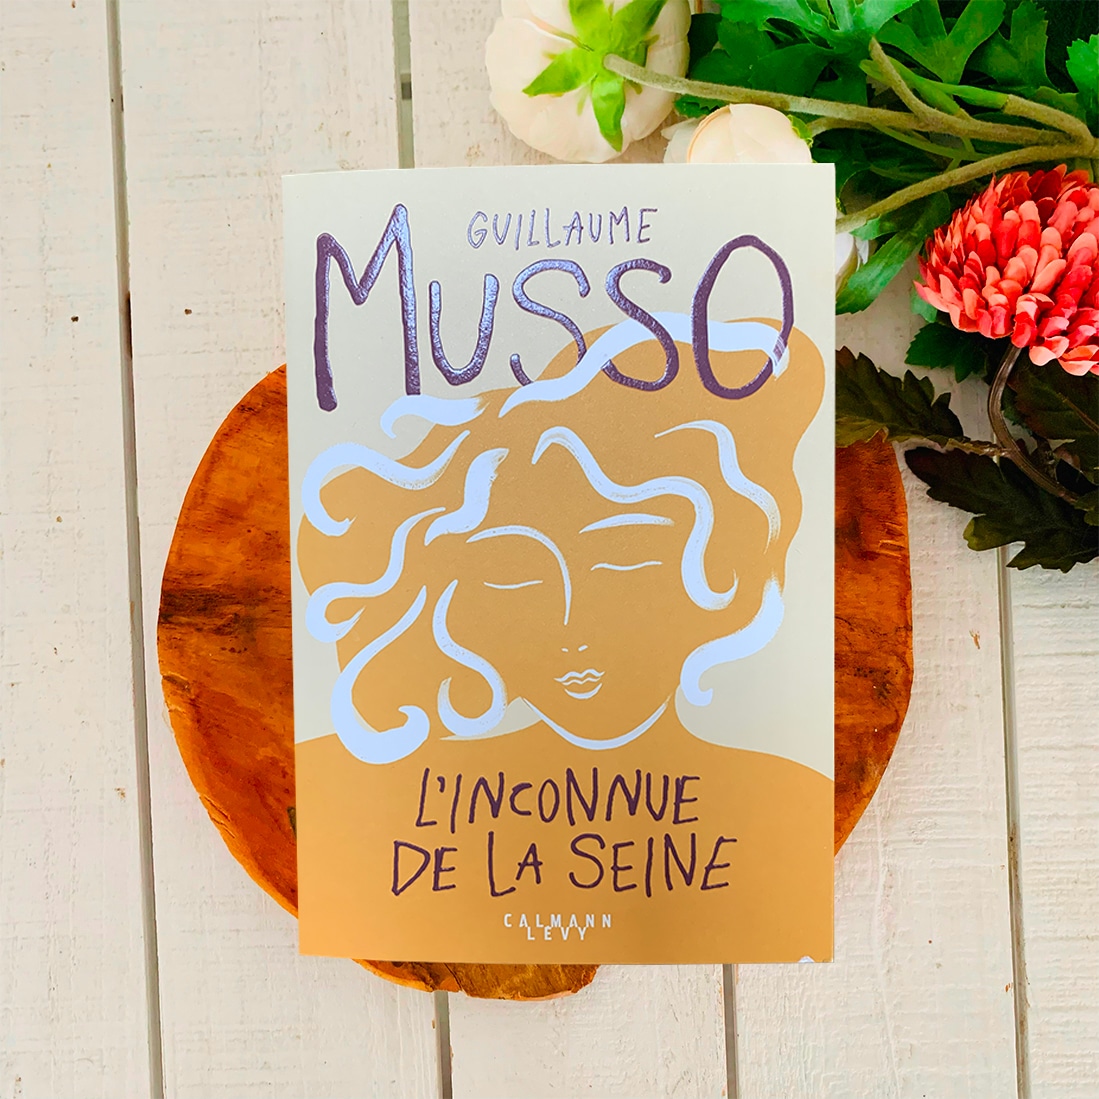 L'inconnue de la seine - Guillaume Musso